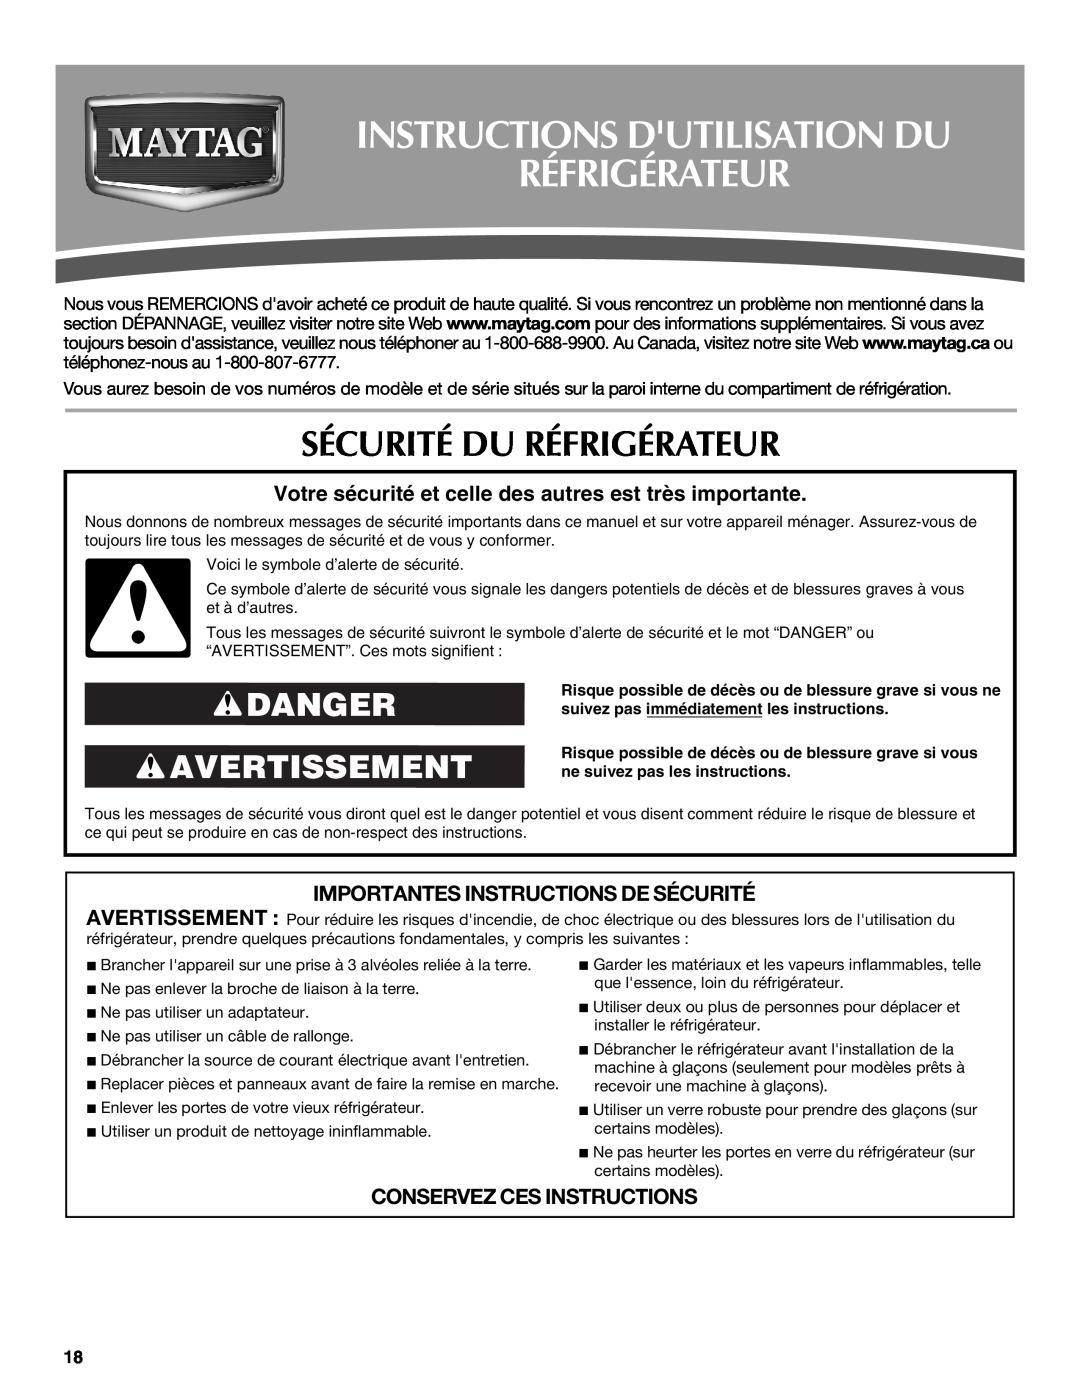 Maytag W10321482A Instructions Dutilisation Du Réfrigérateur, Sécurité Du Réfrigérateur, Danger Avertissement 